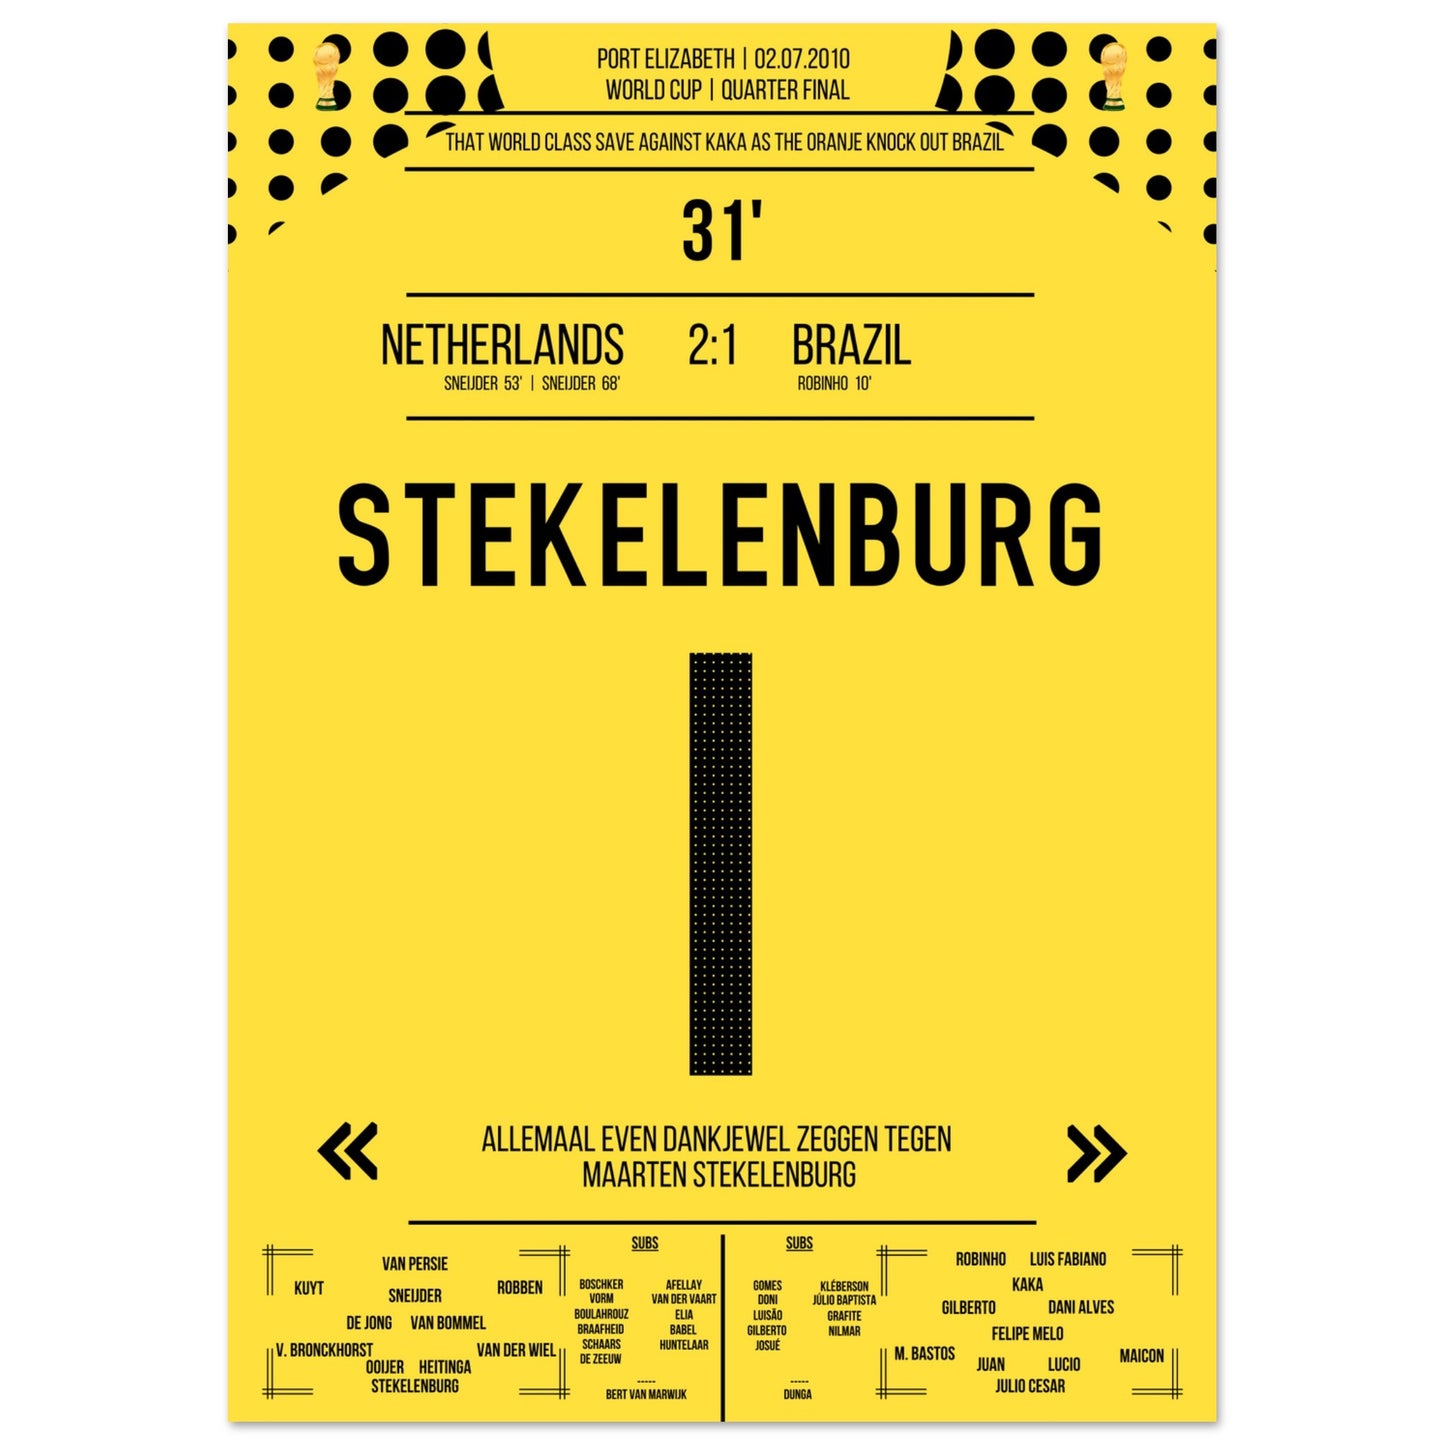 Stekelenburg's Weltklasse Aktion gegen Kaka bei der WM 2010 Kommentar-Version